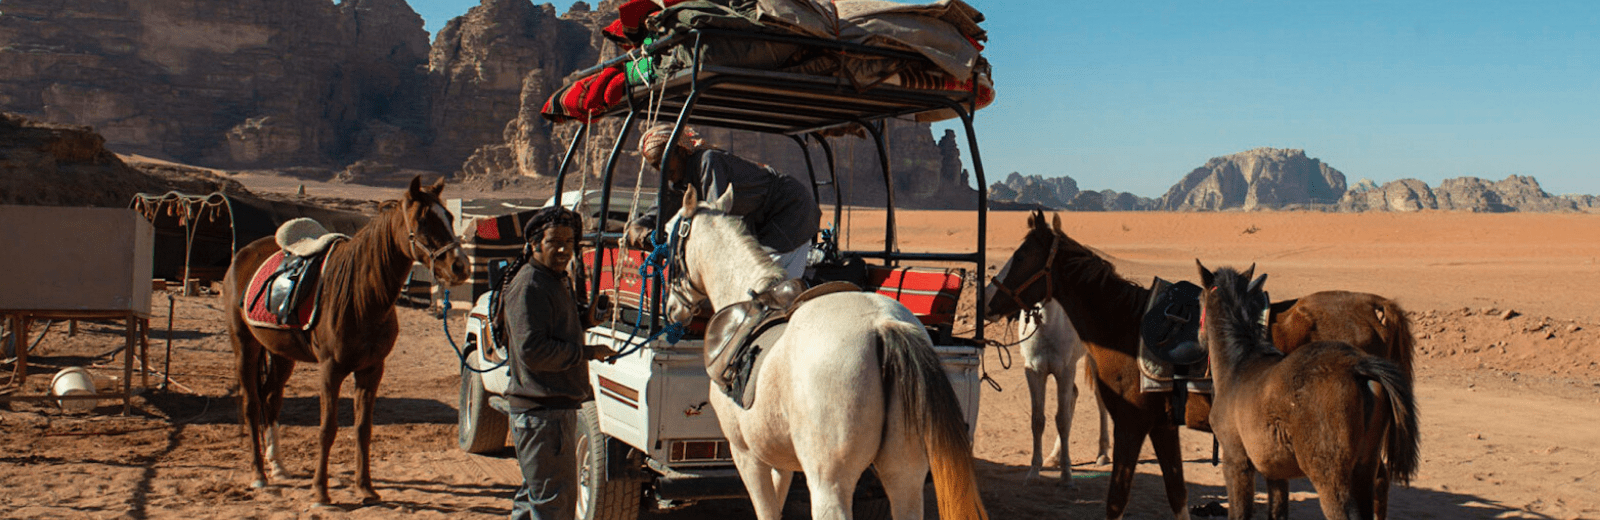 Paarden trektocht vanaf 1 dag in de woestijn, met overnachting onder de sterren. Jordan Desert Journeys